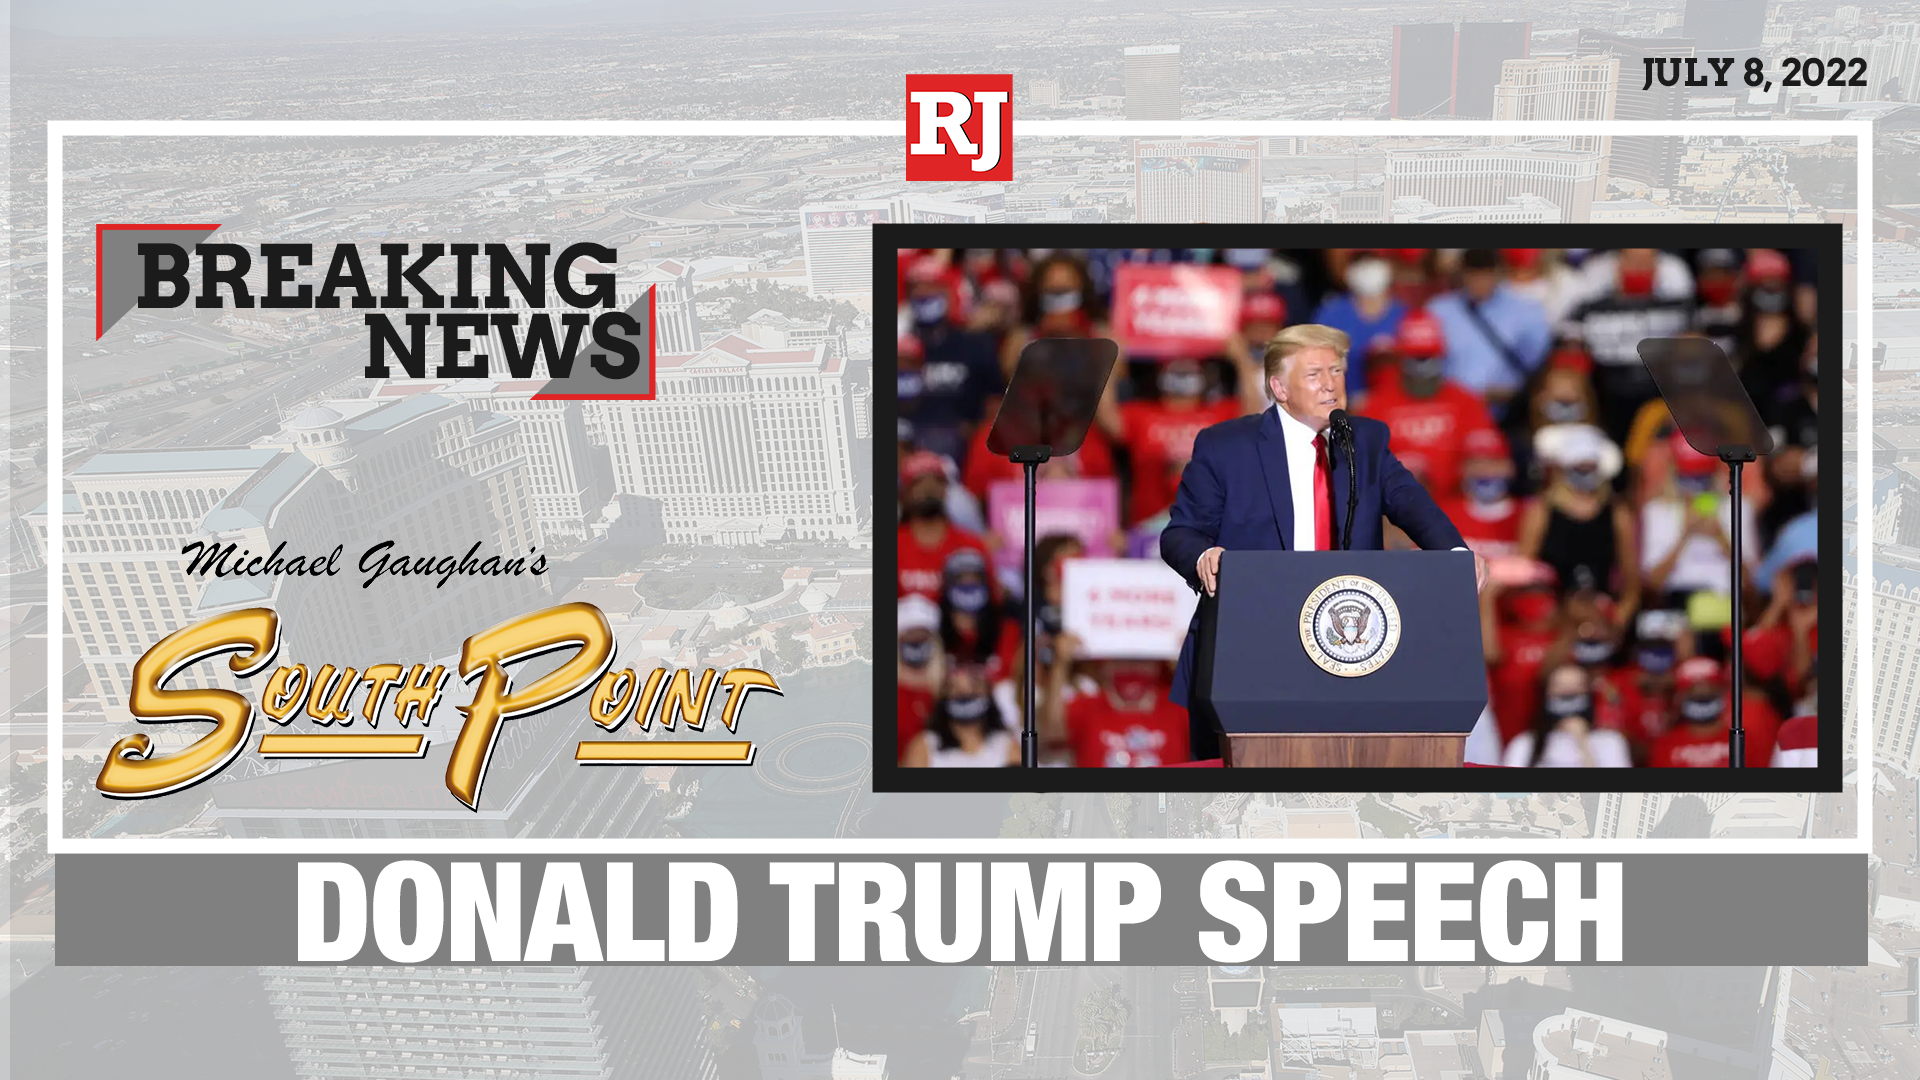 Donald Trump Speaks at Las Vegas Event